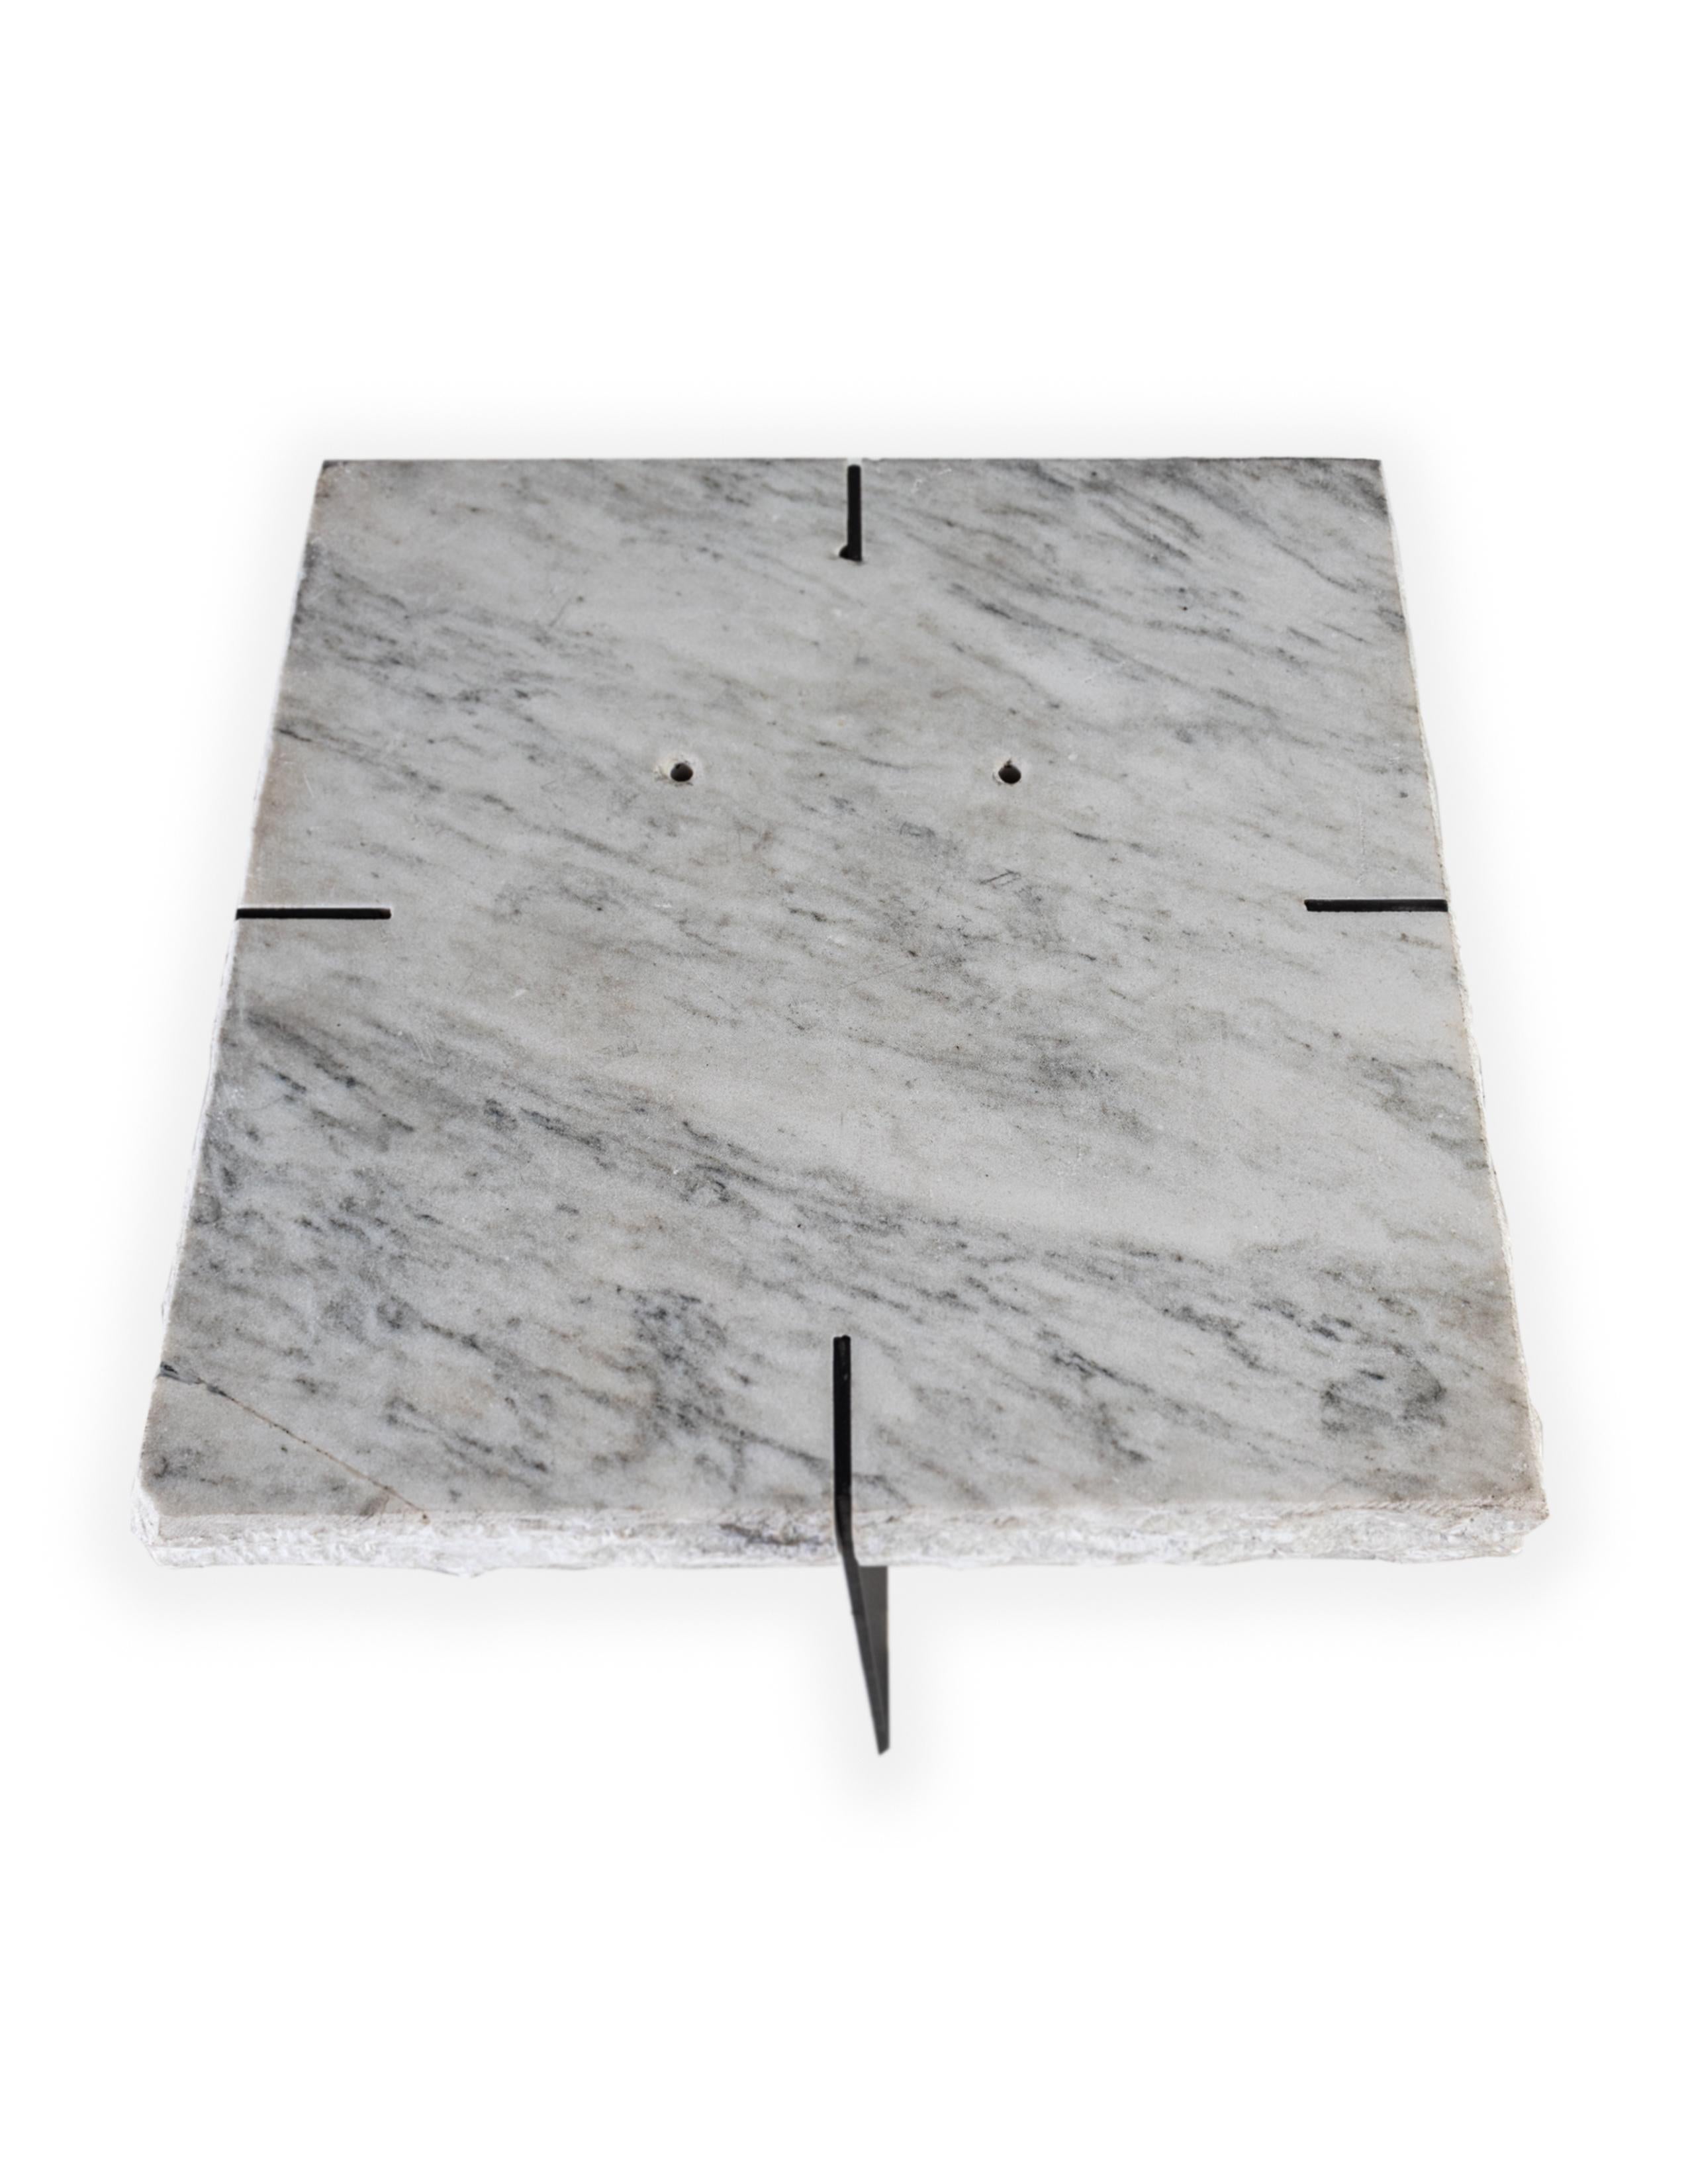 Italian Repurposed Carrara Marble Slab on Blackened Steel Mount